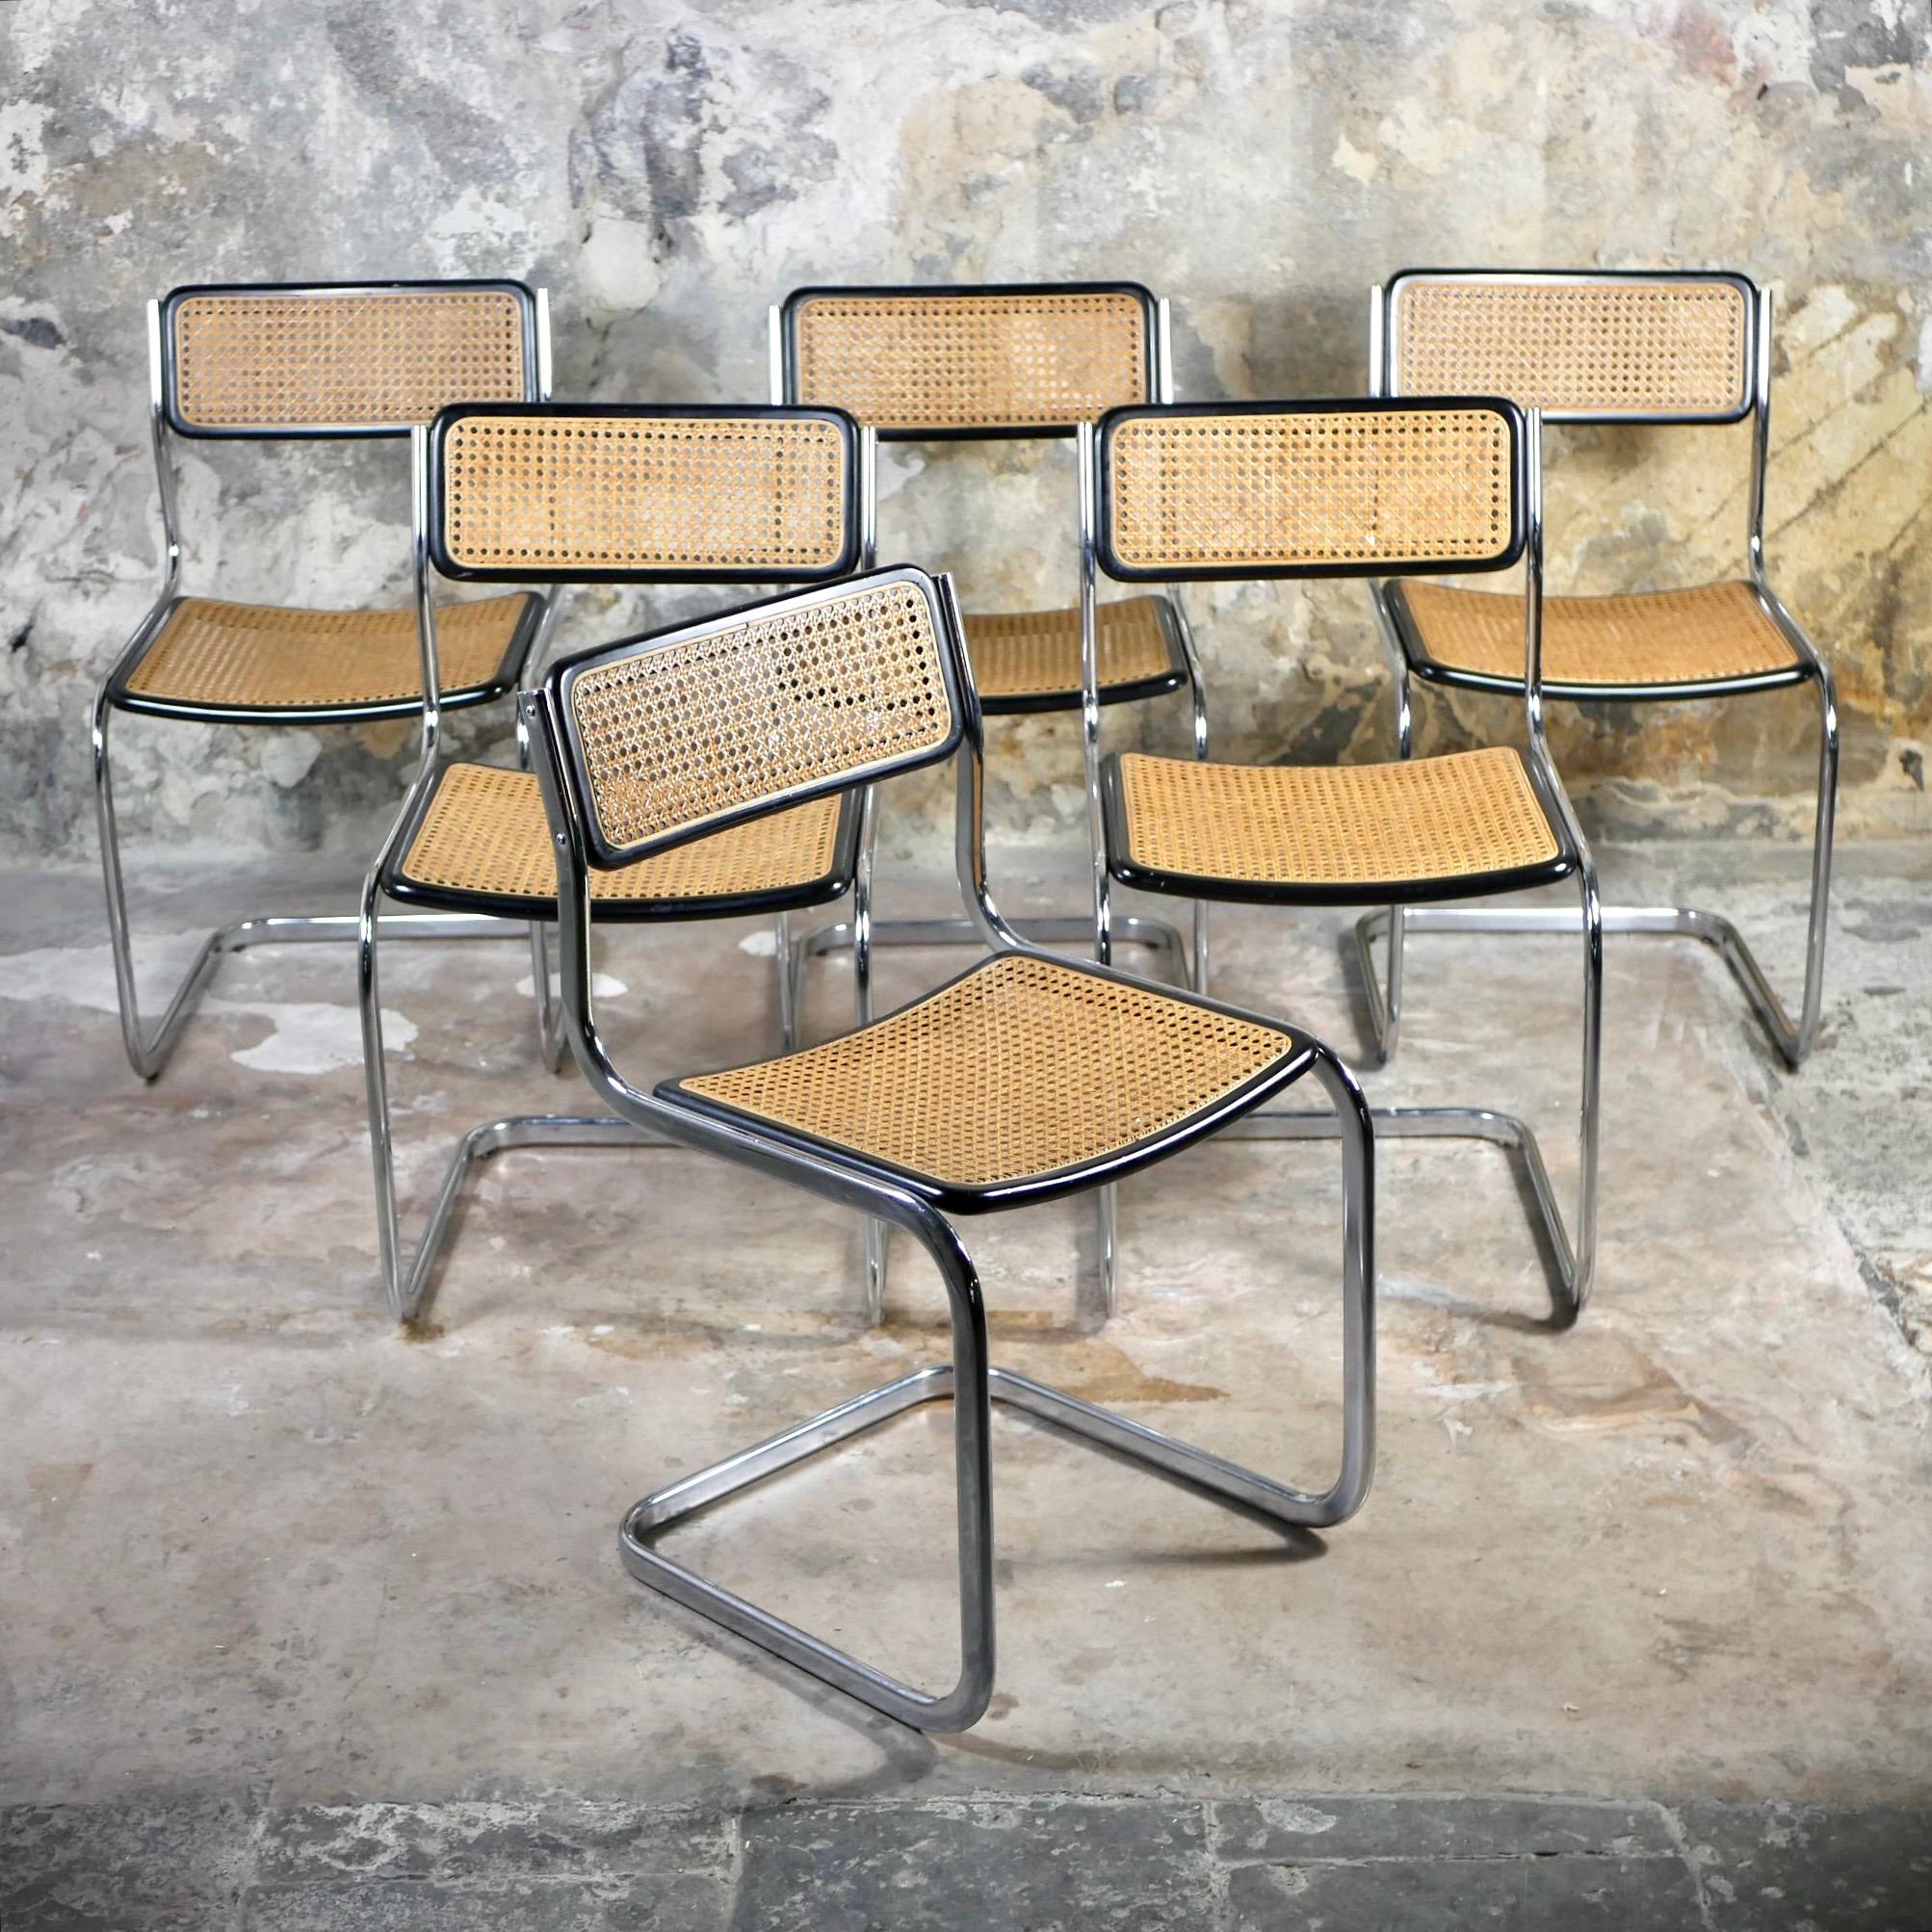 Ensemble de 6 chaises cannées des années 1970 dans le style de Cesca de Marcel Breuer, fabriquées par Arrben en Italie. 
Certaines chaises sont estampillées 